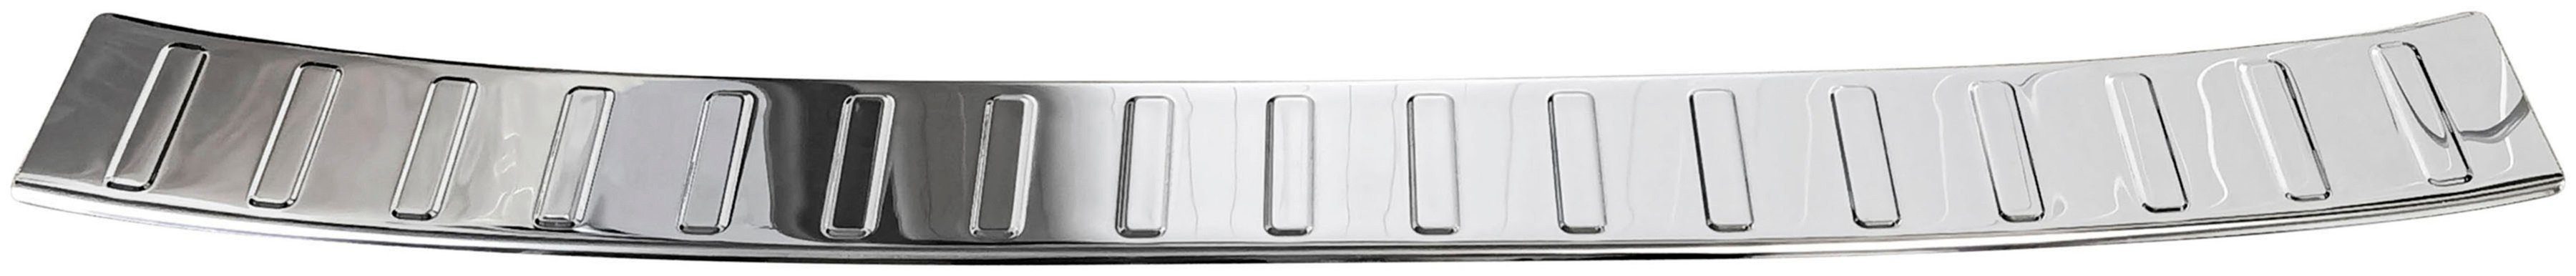 RECAMBO Ladekantenschutz, poliert, Edelstahl FIAT 2015, für Zubehör KOMBI, mit Typ chrom Abkantung 356, TIPO